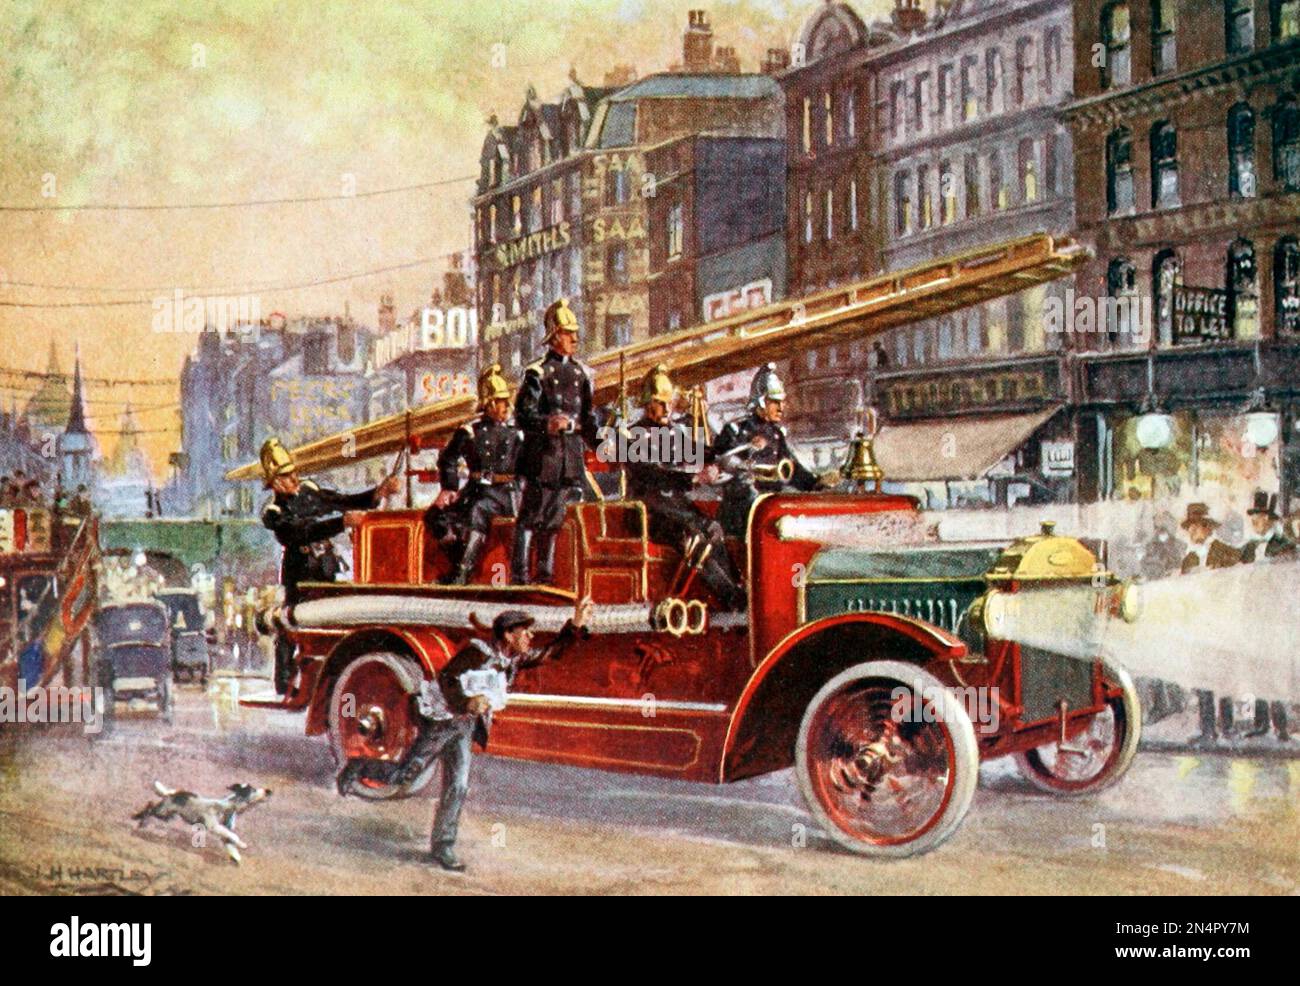 Die Feuerwehr zur Rettung, London, England, um 1900 Stockfoto